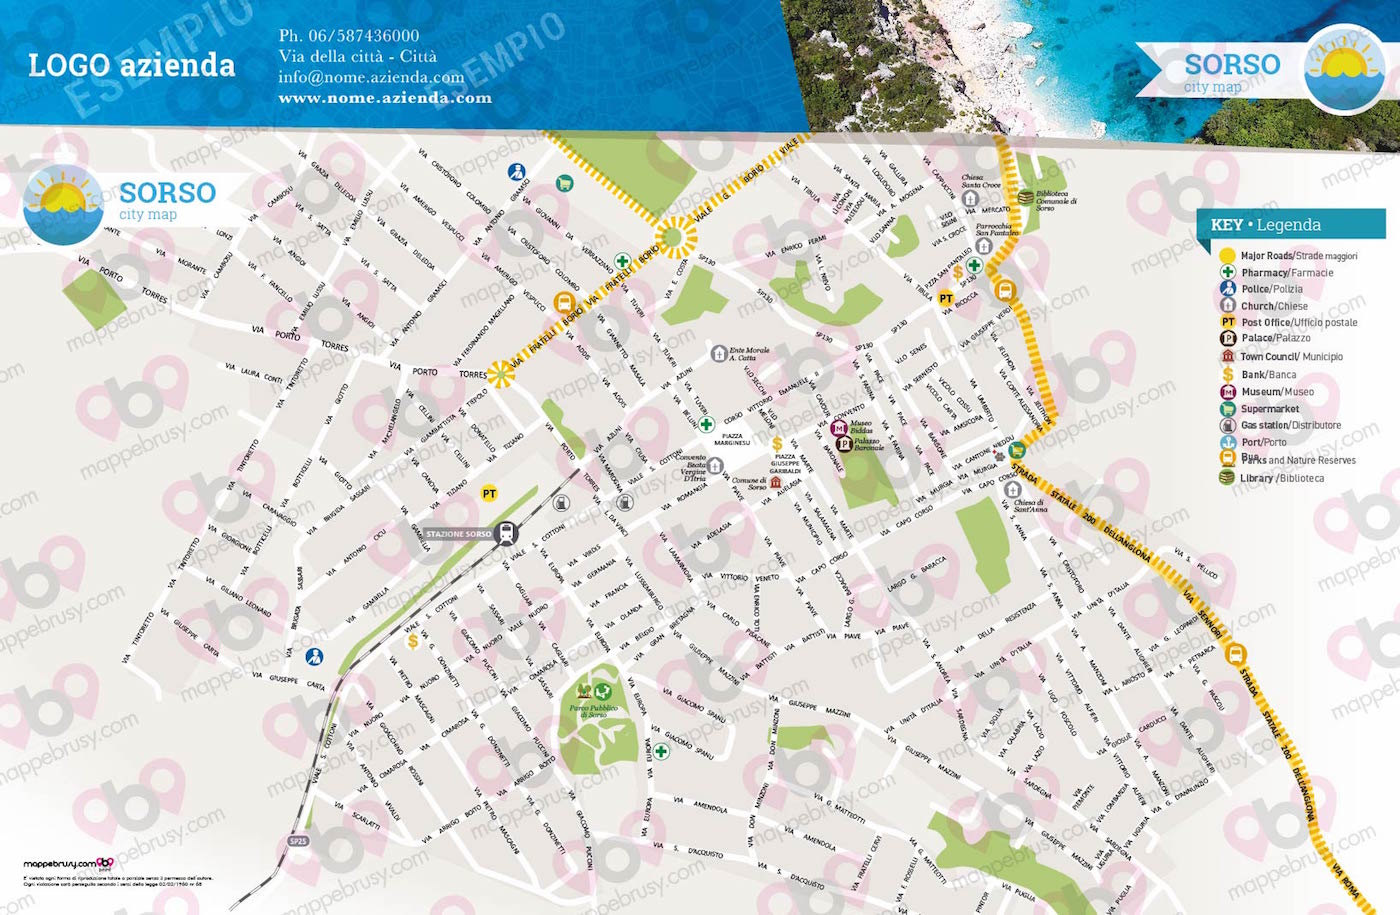 Mappa di Sorso - Sorso city map - mappa Sorso - mappa personalizzata di Sorso